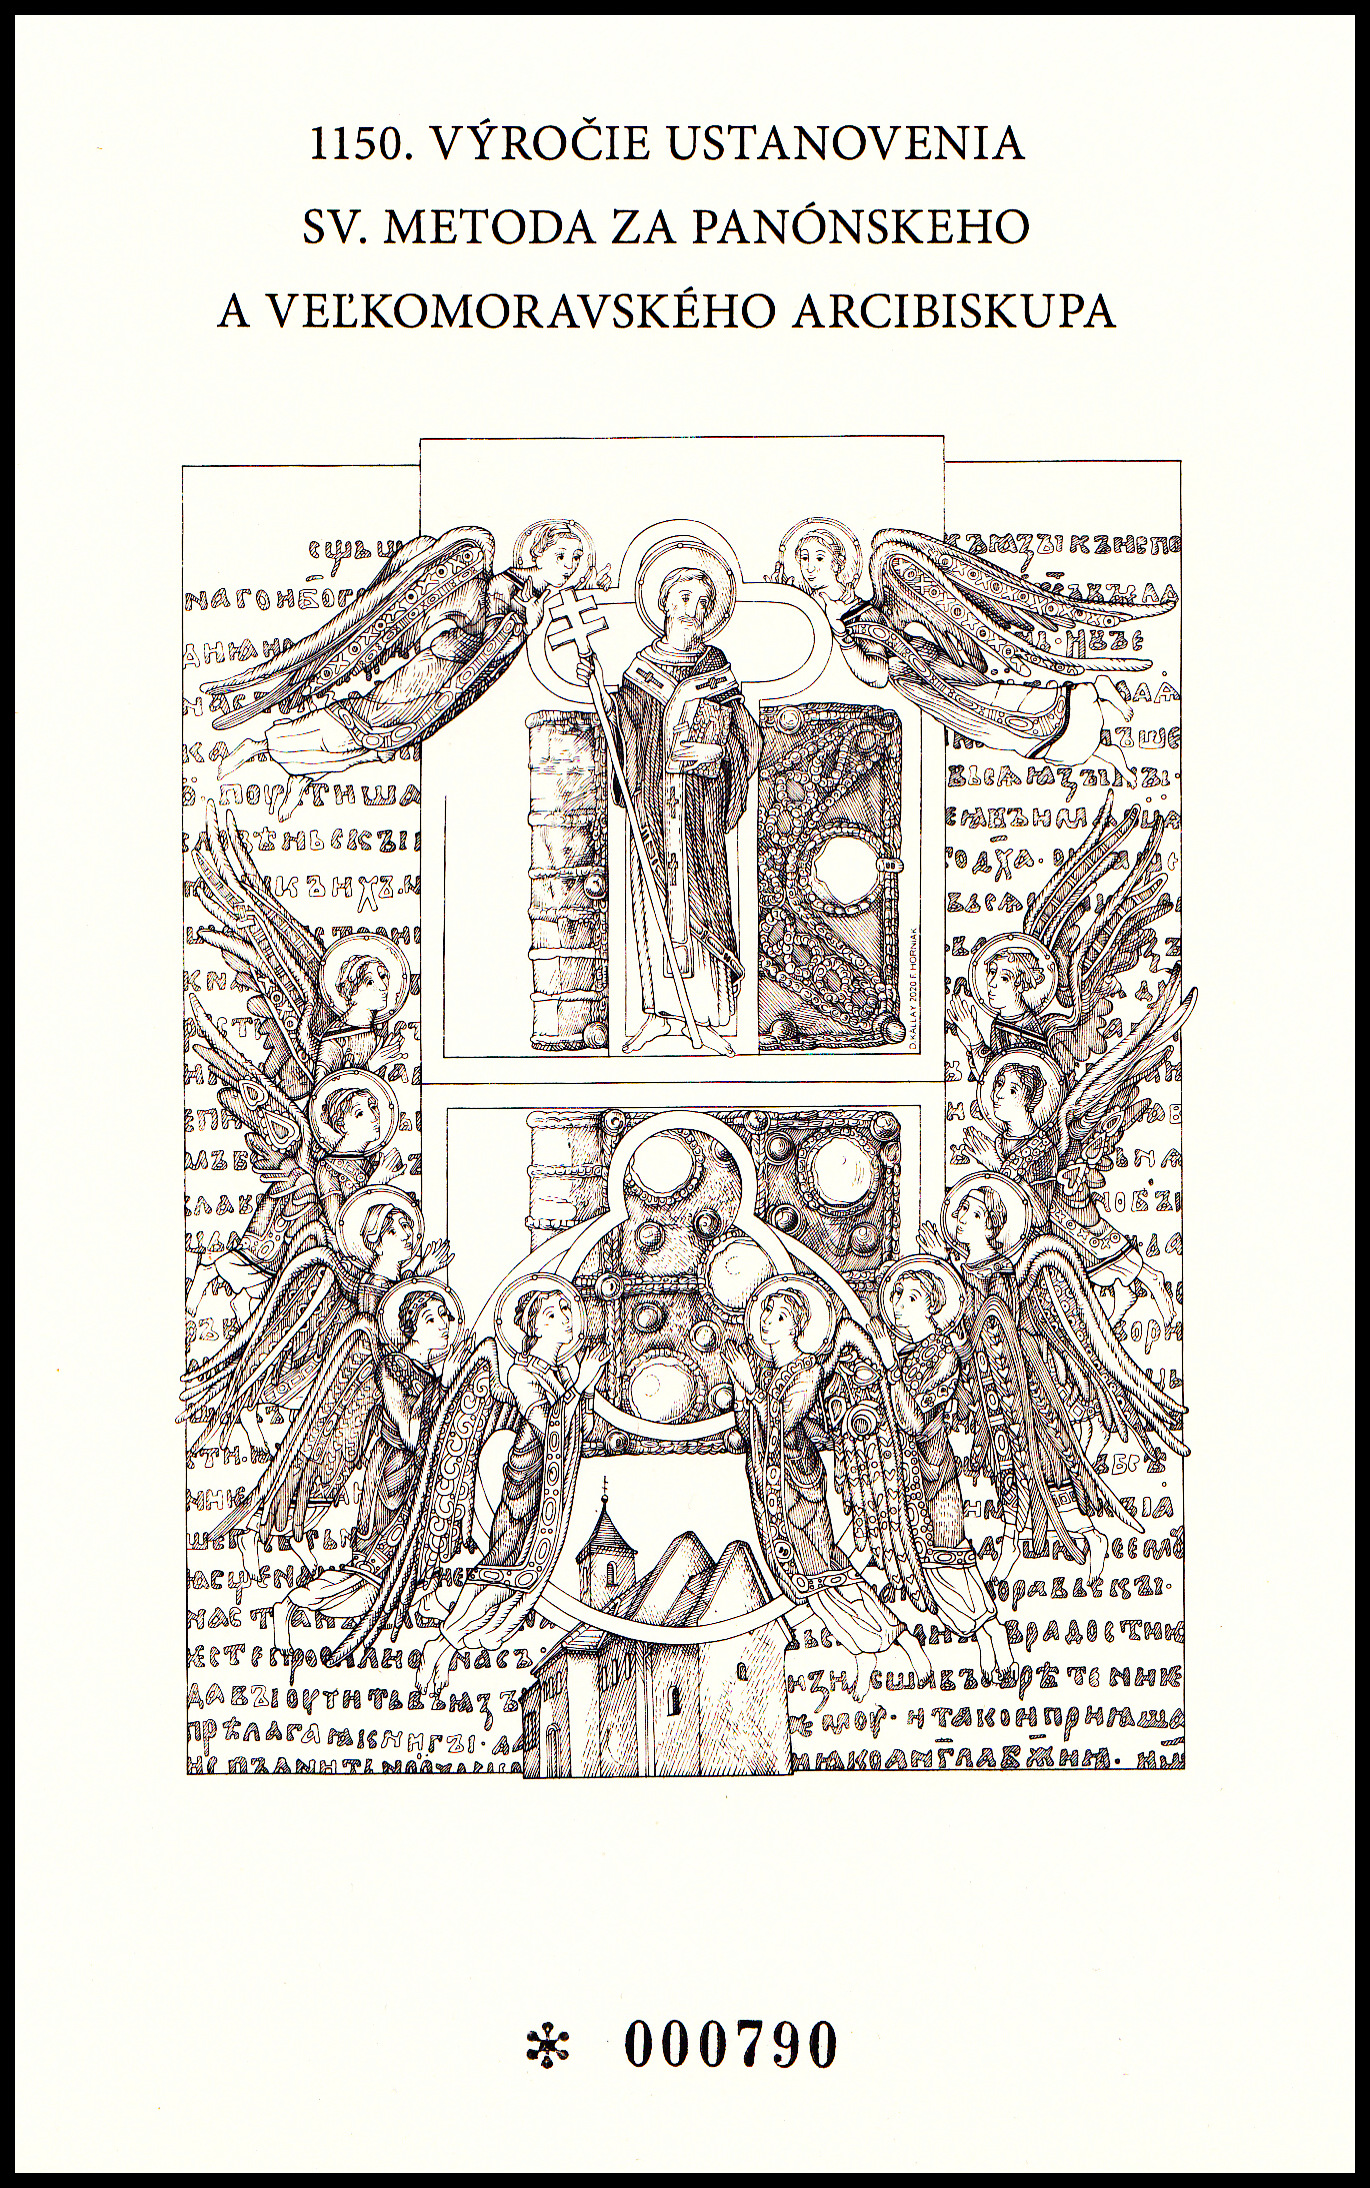 Černotisk - 1150. let ustanovenia sv. Metoda za veľkomoravského arcibiskupa